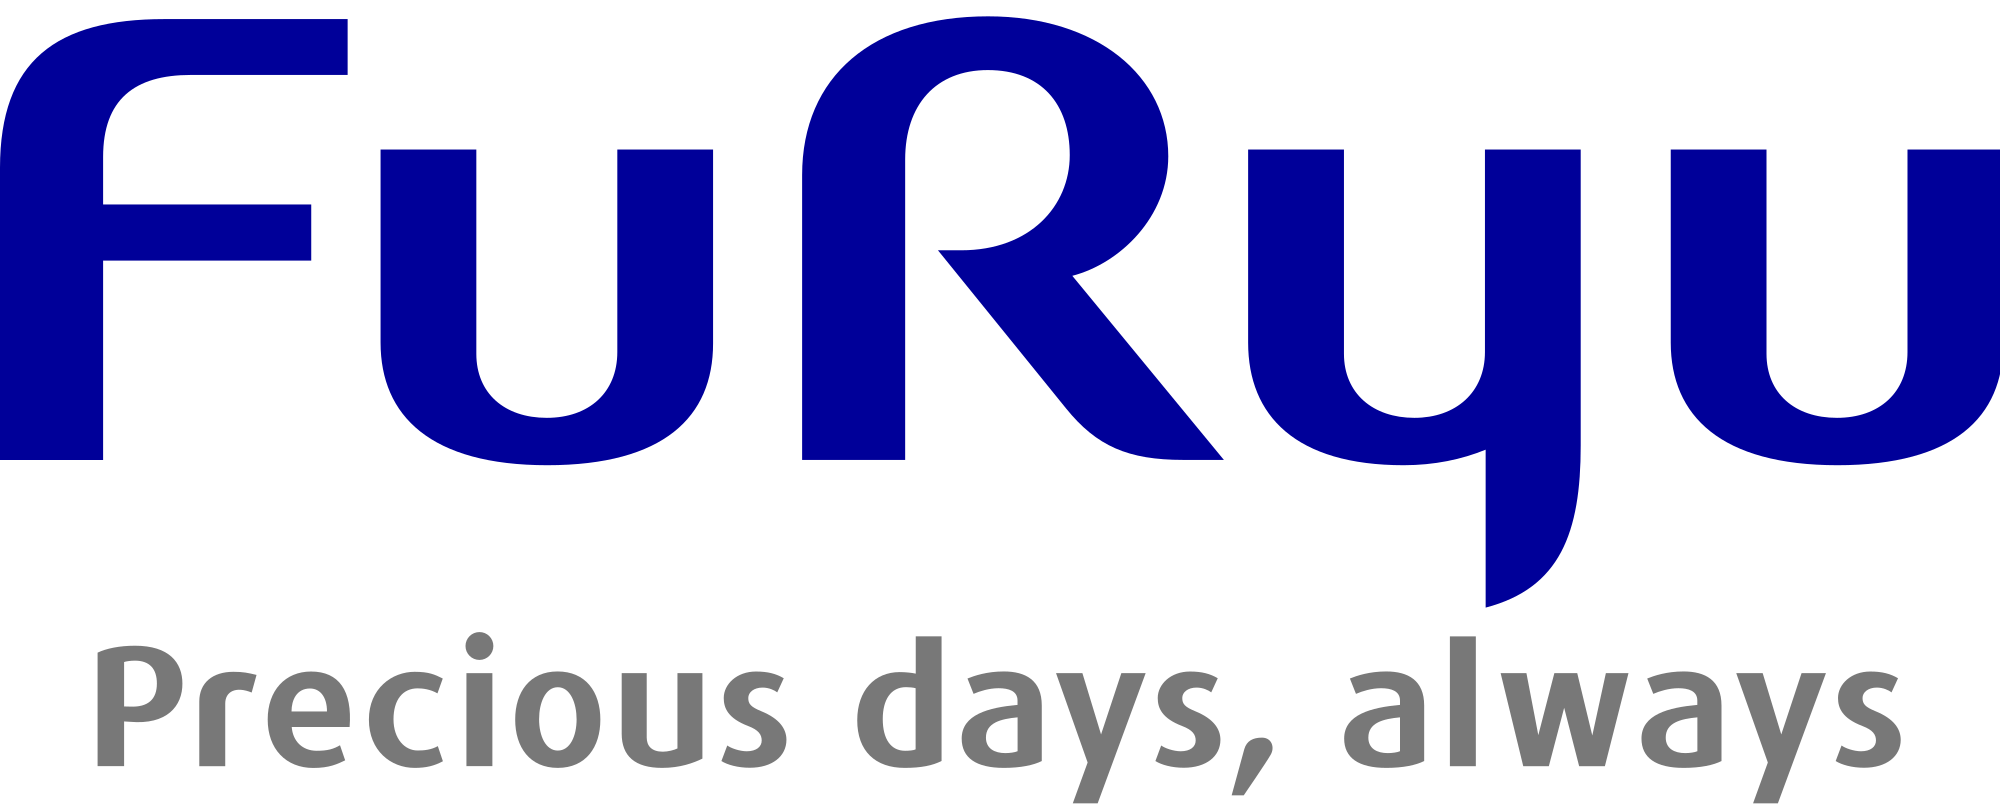 FuRyu Logo